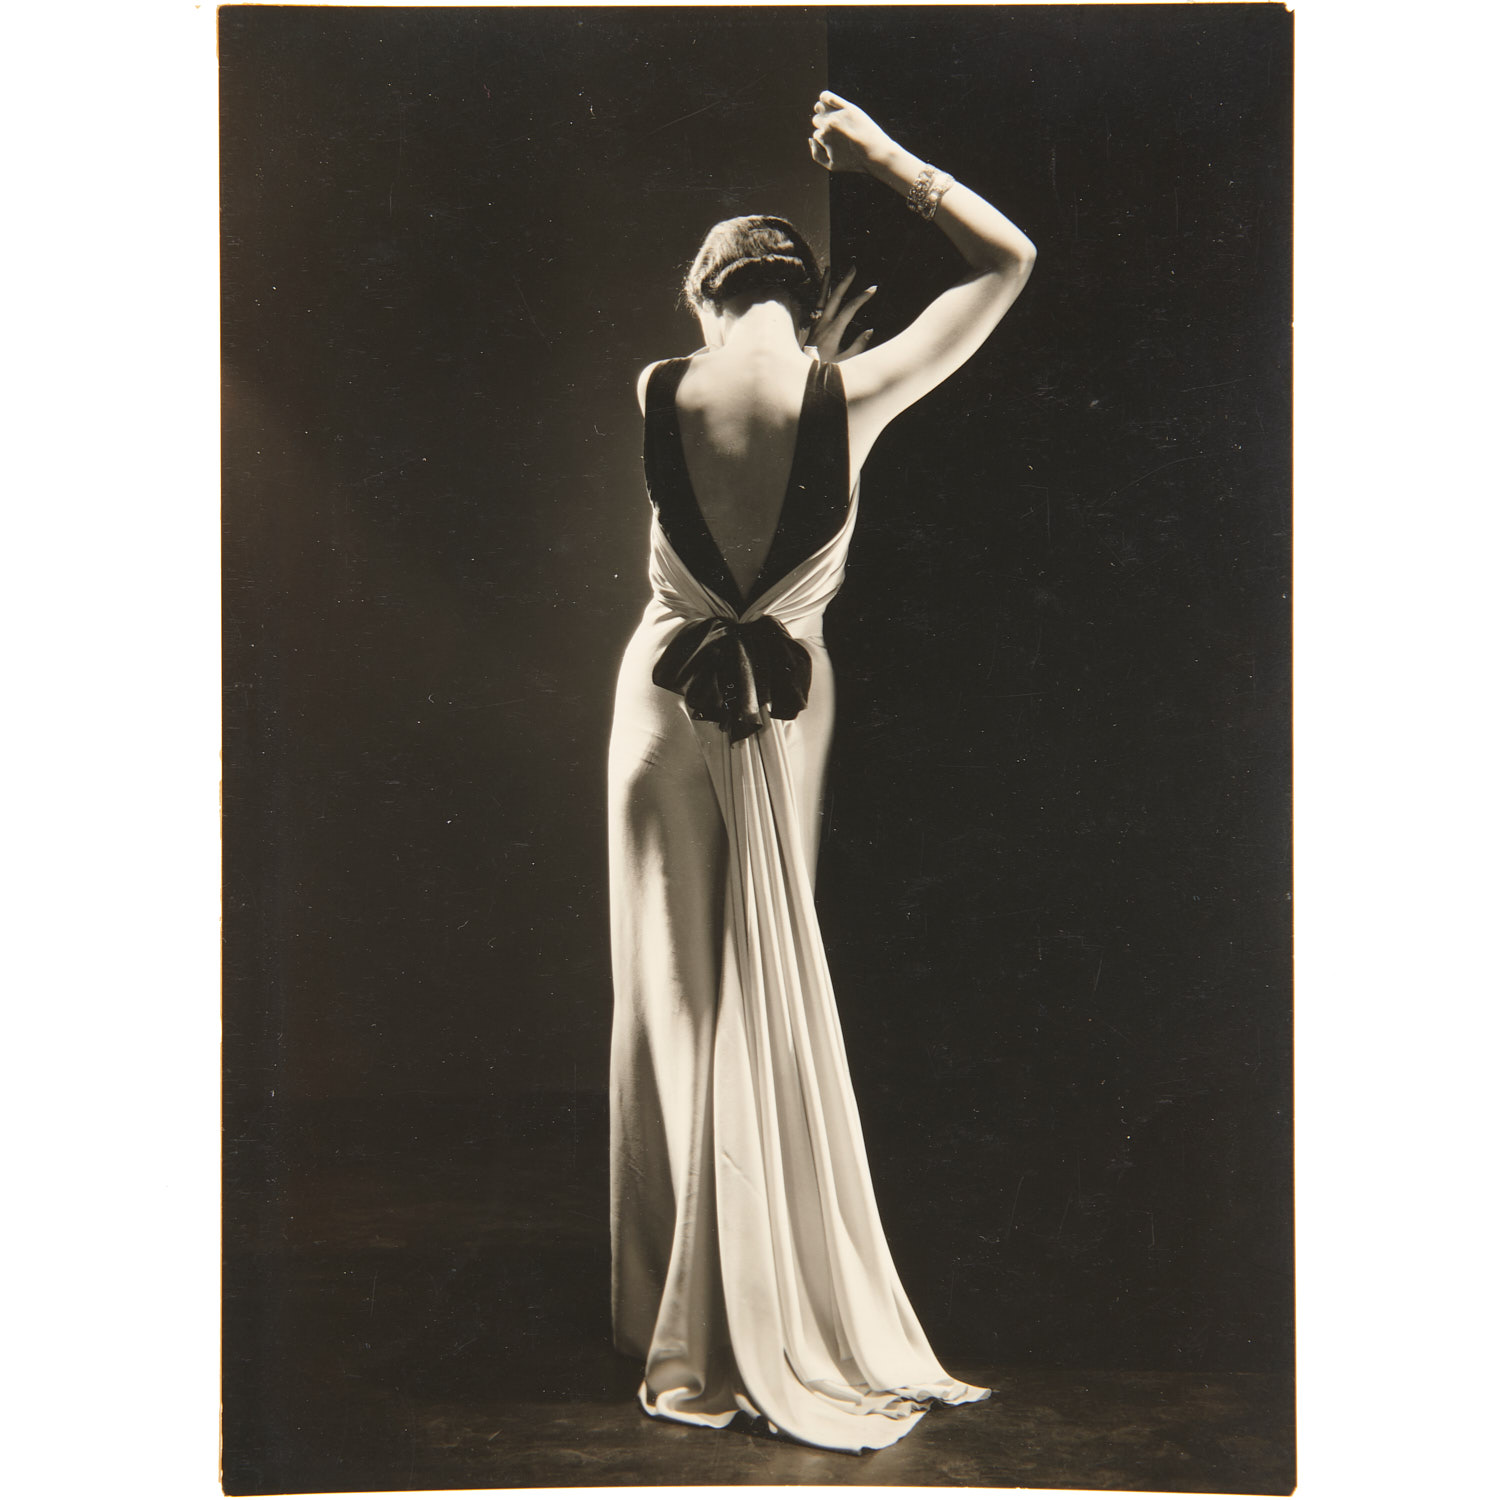 Toto Koopman wearing Augusta Bernard dress, Vogue, September, 1933, photo by Hoyningen-Huene